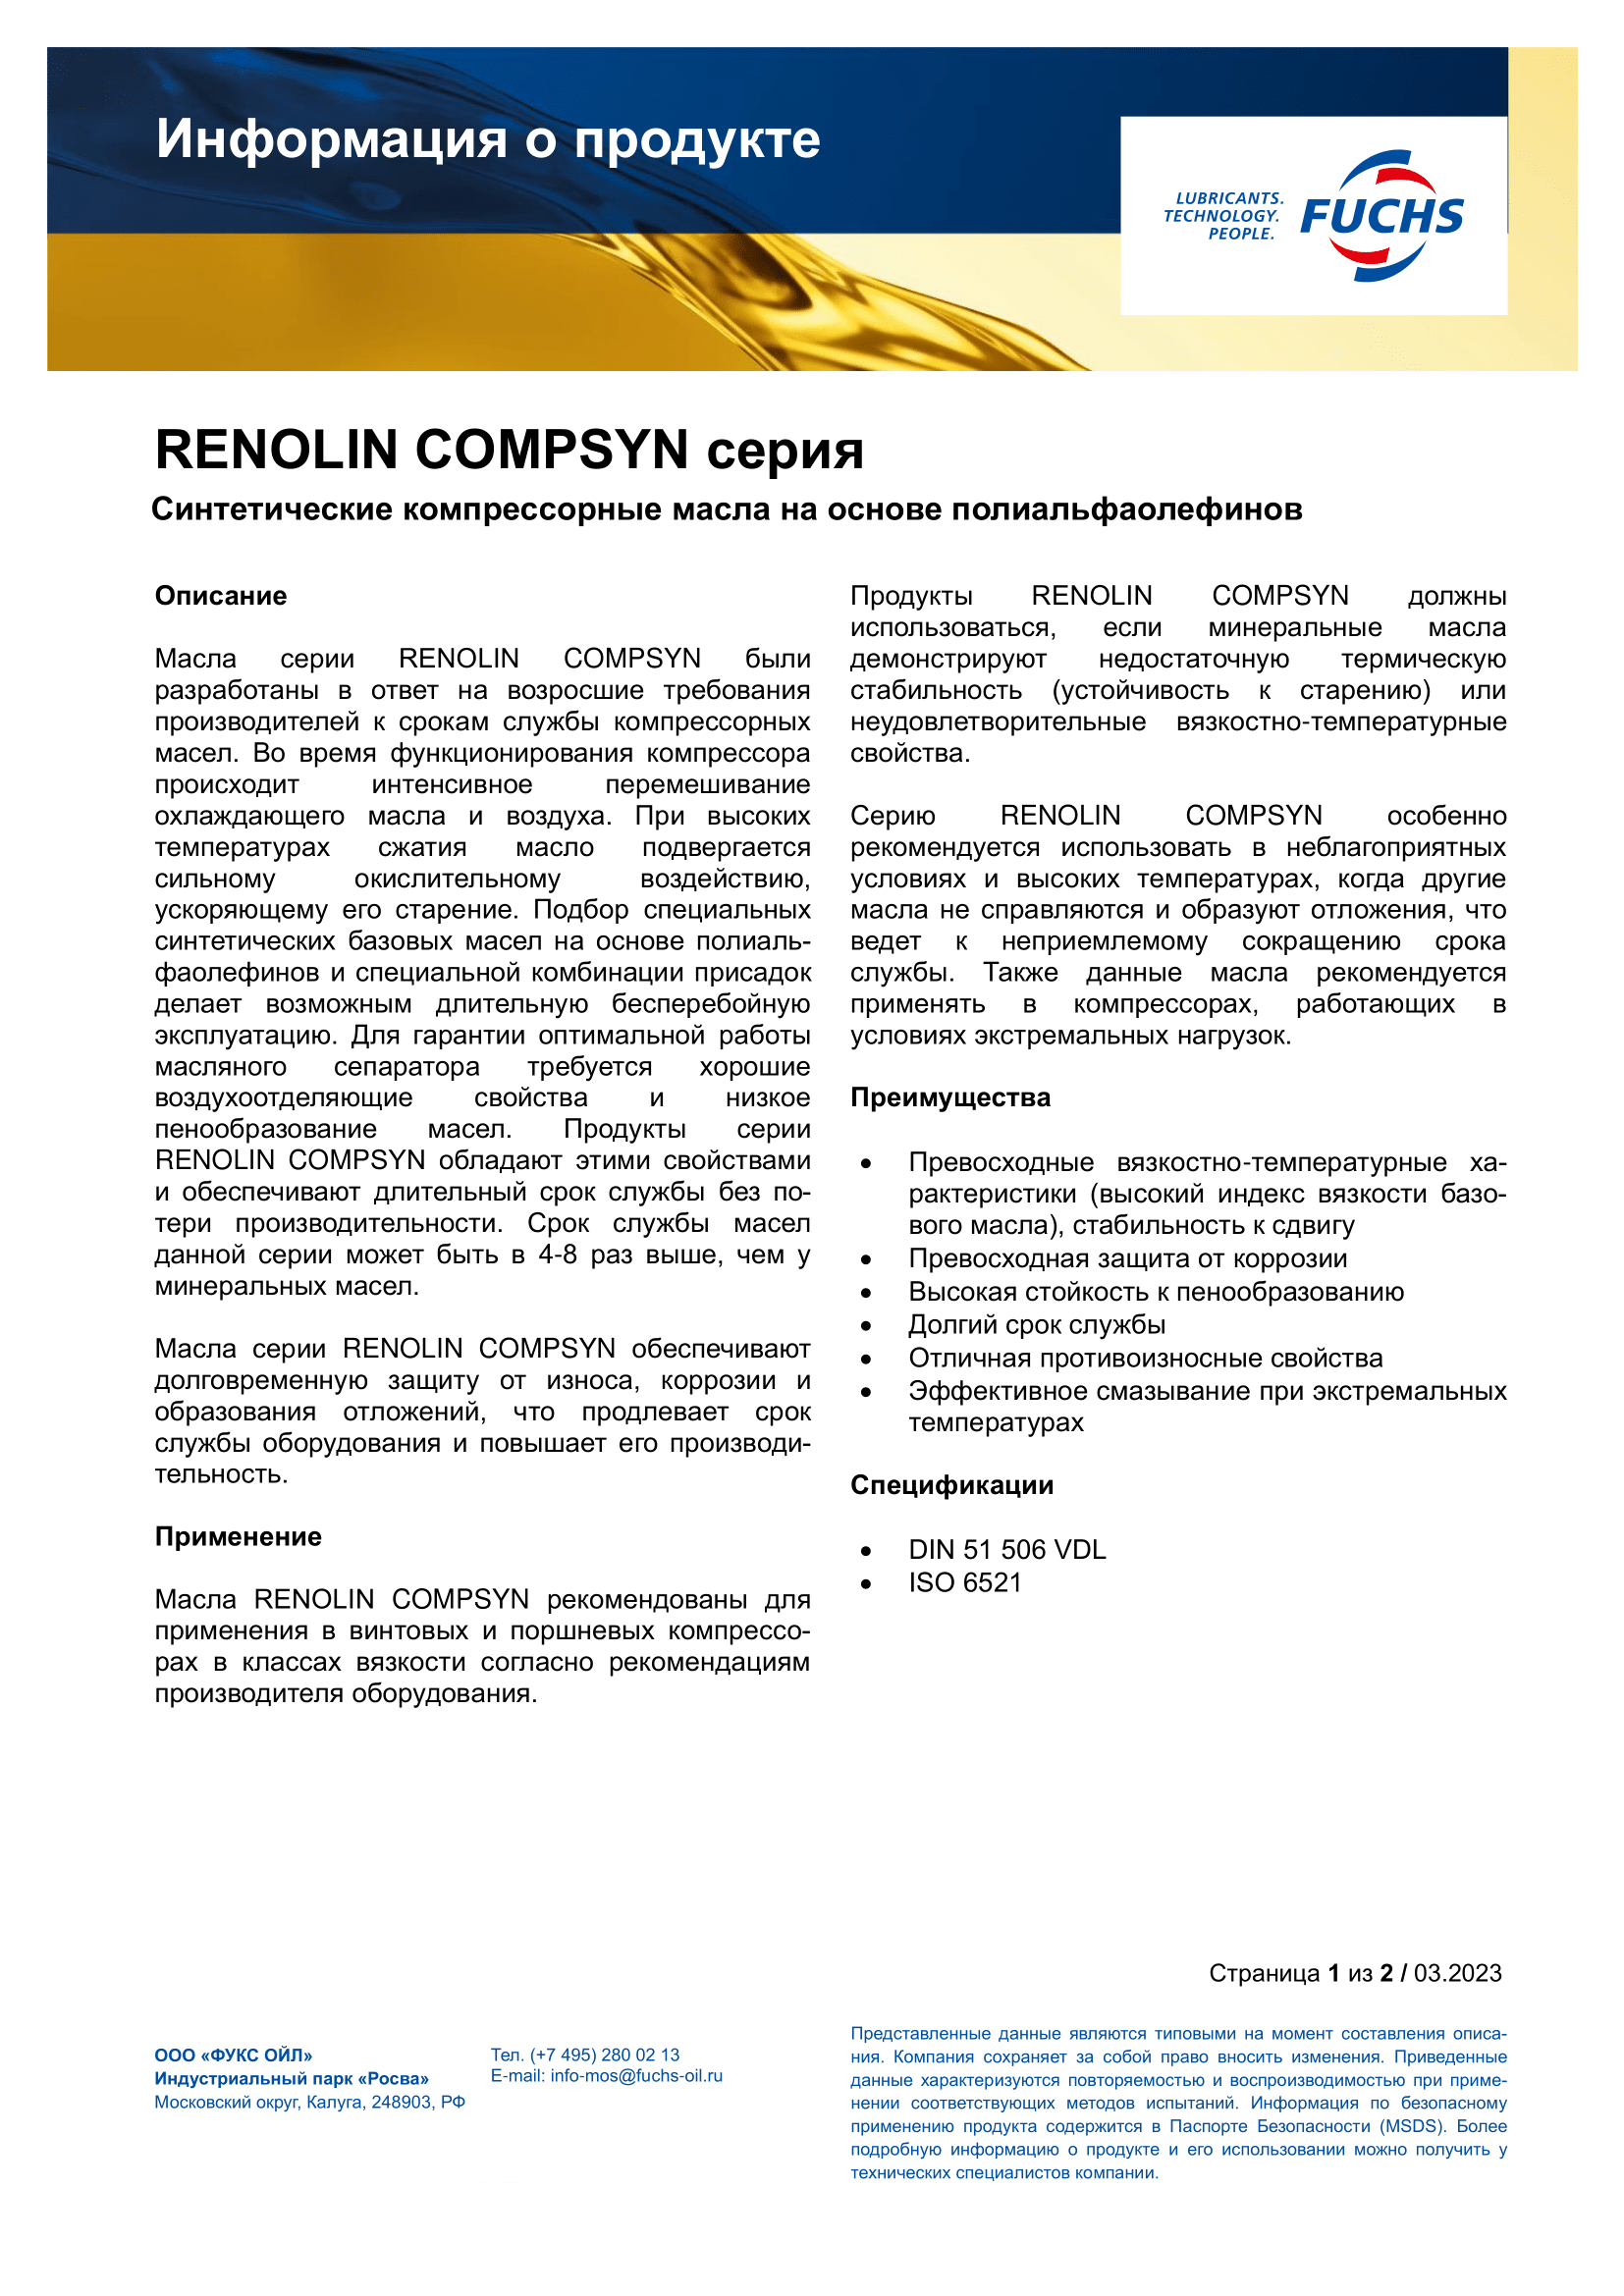 RENOLIN COMPSYN 68